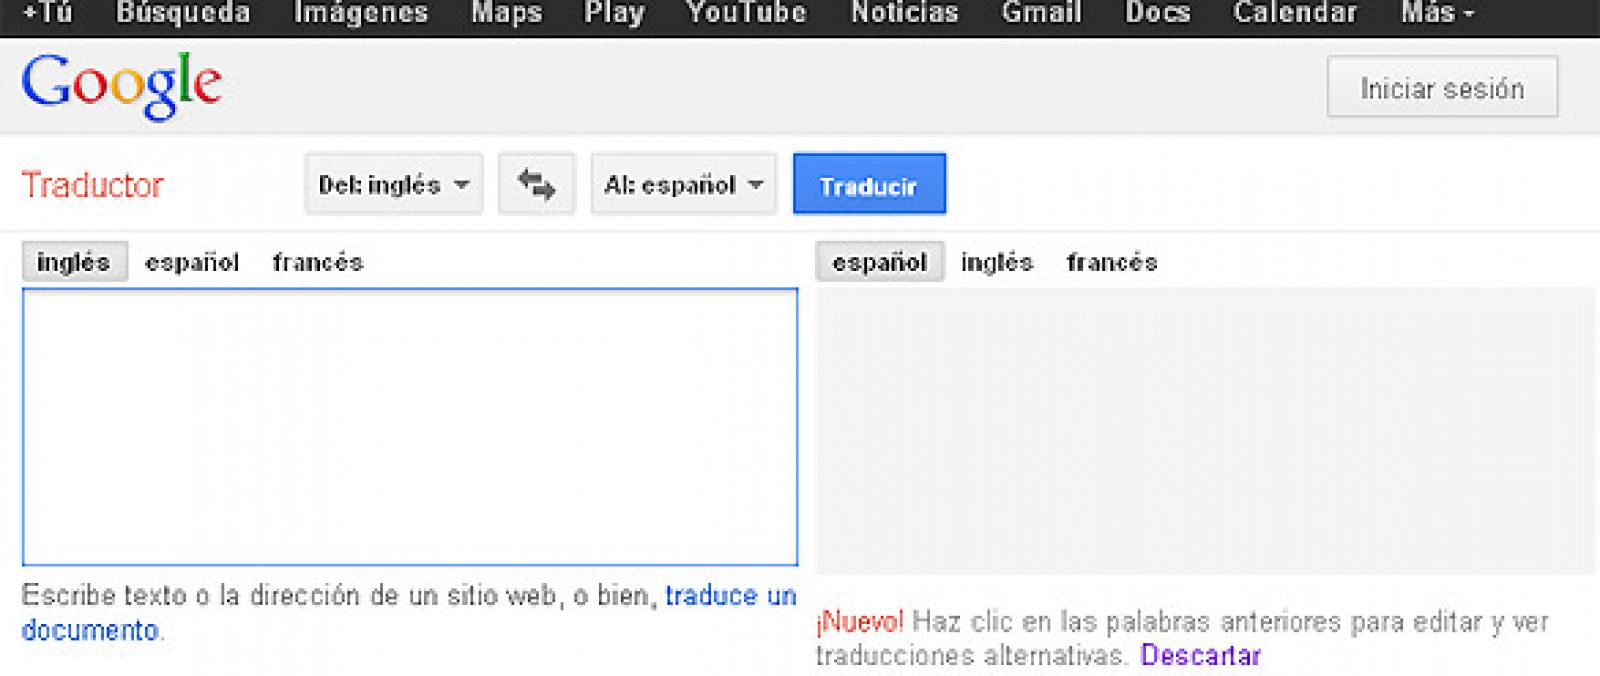 Página principal de Google Translate, el servicio de traducción de la compañía